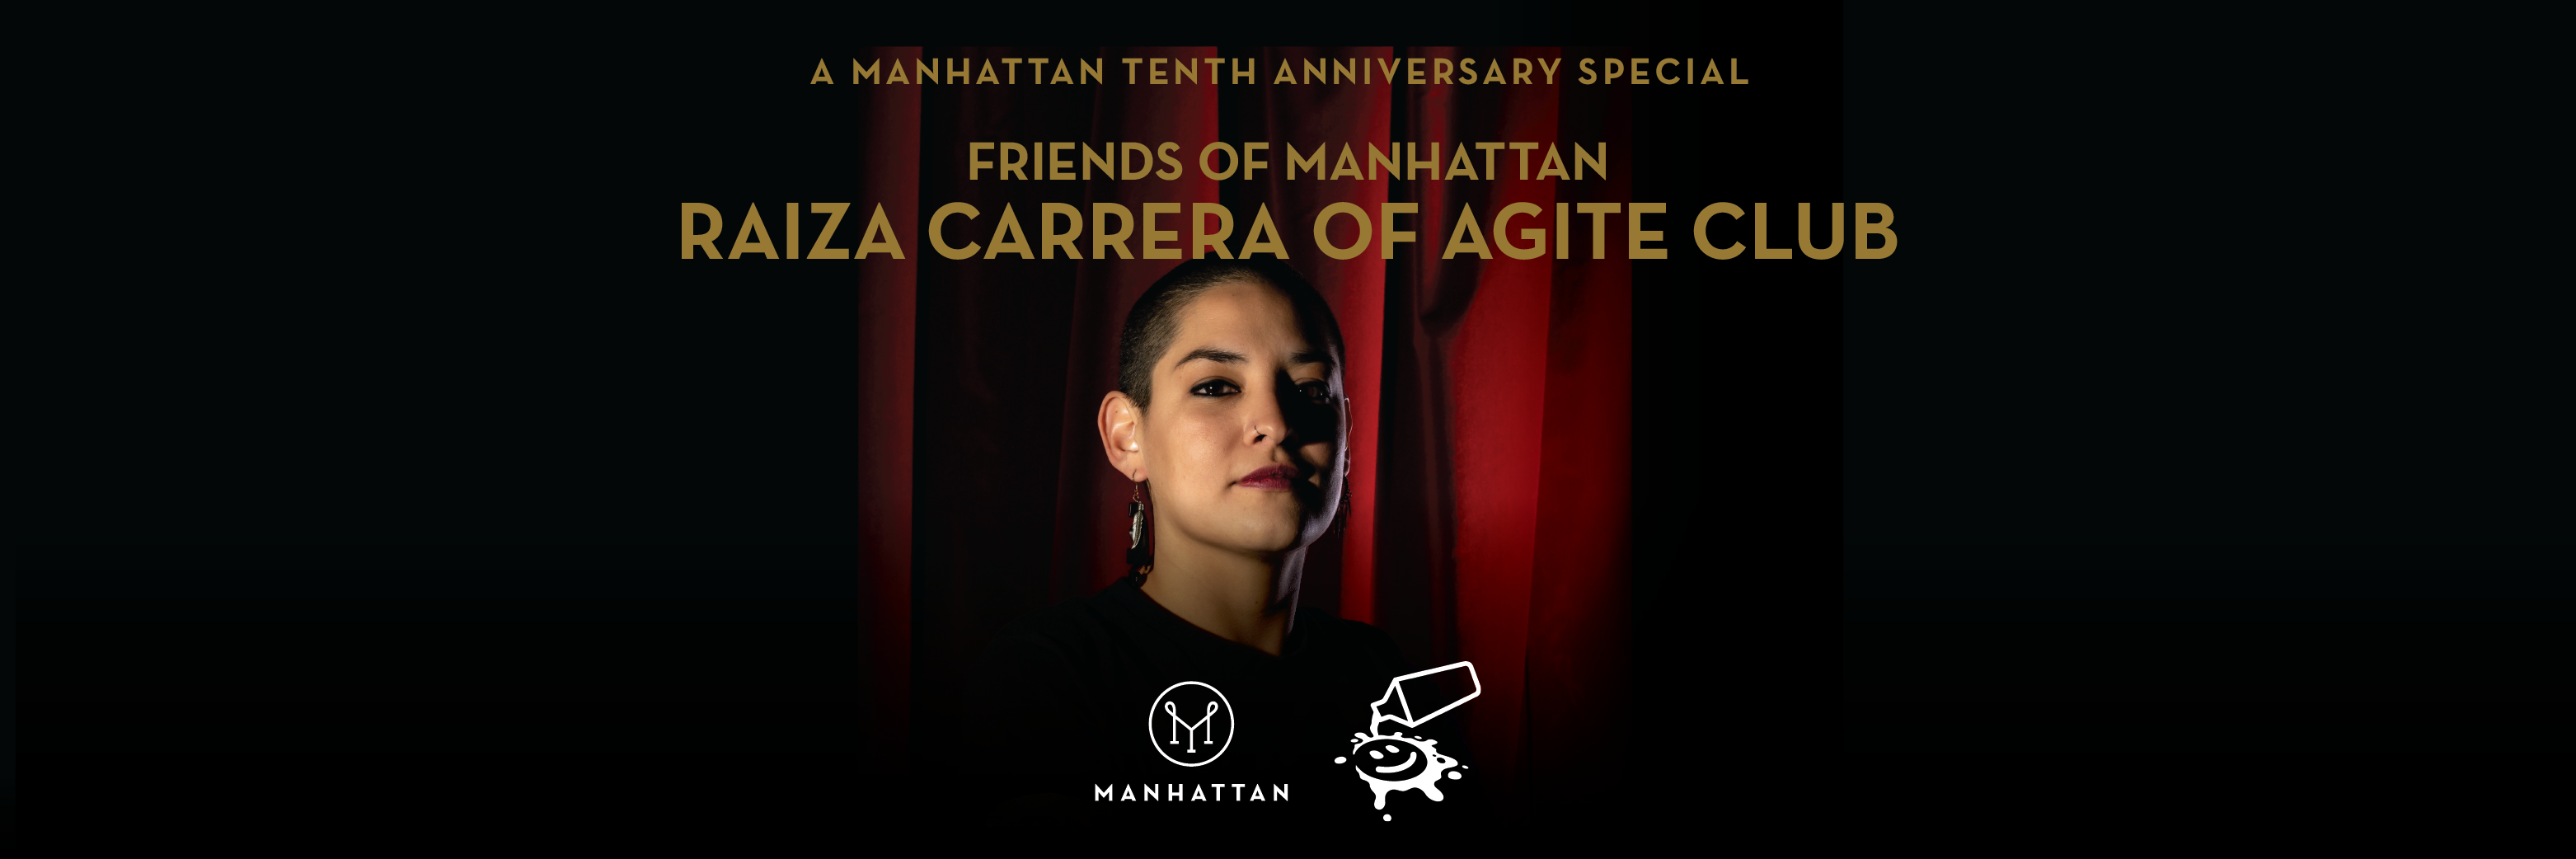 Friends of Manhattan x Agite Club with Raiza Carrera 